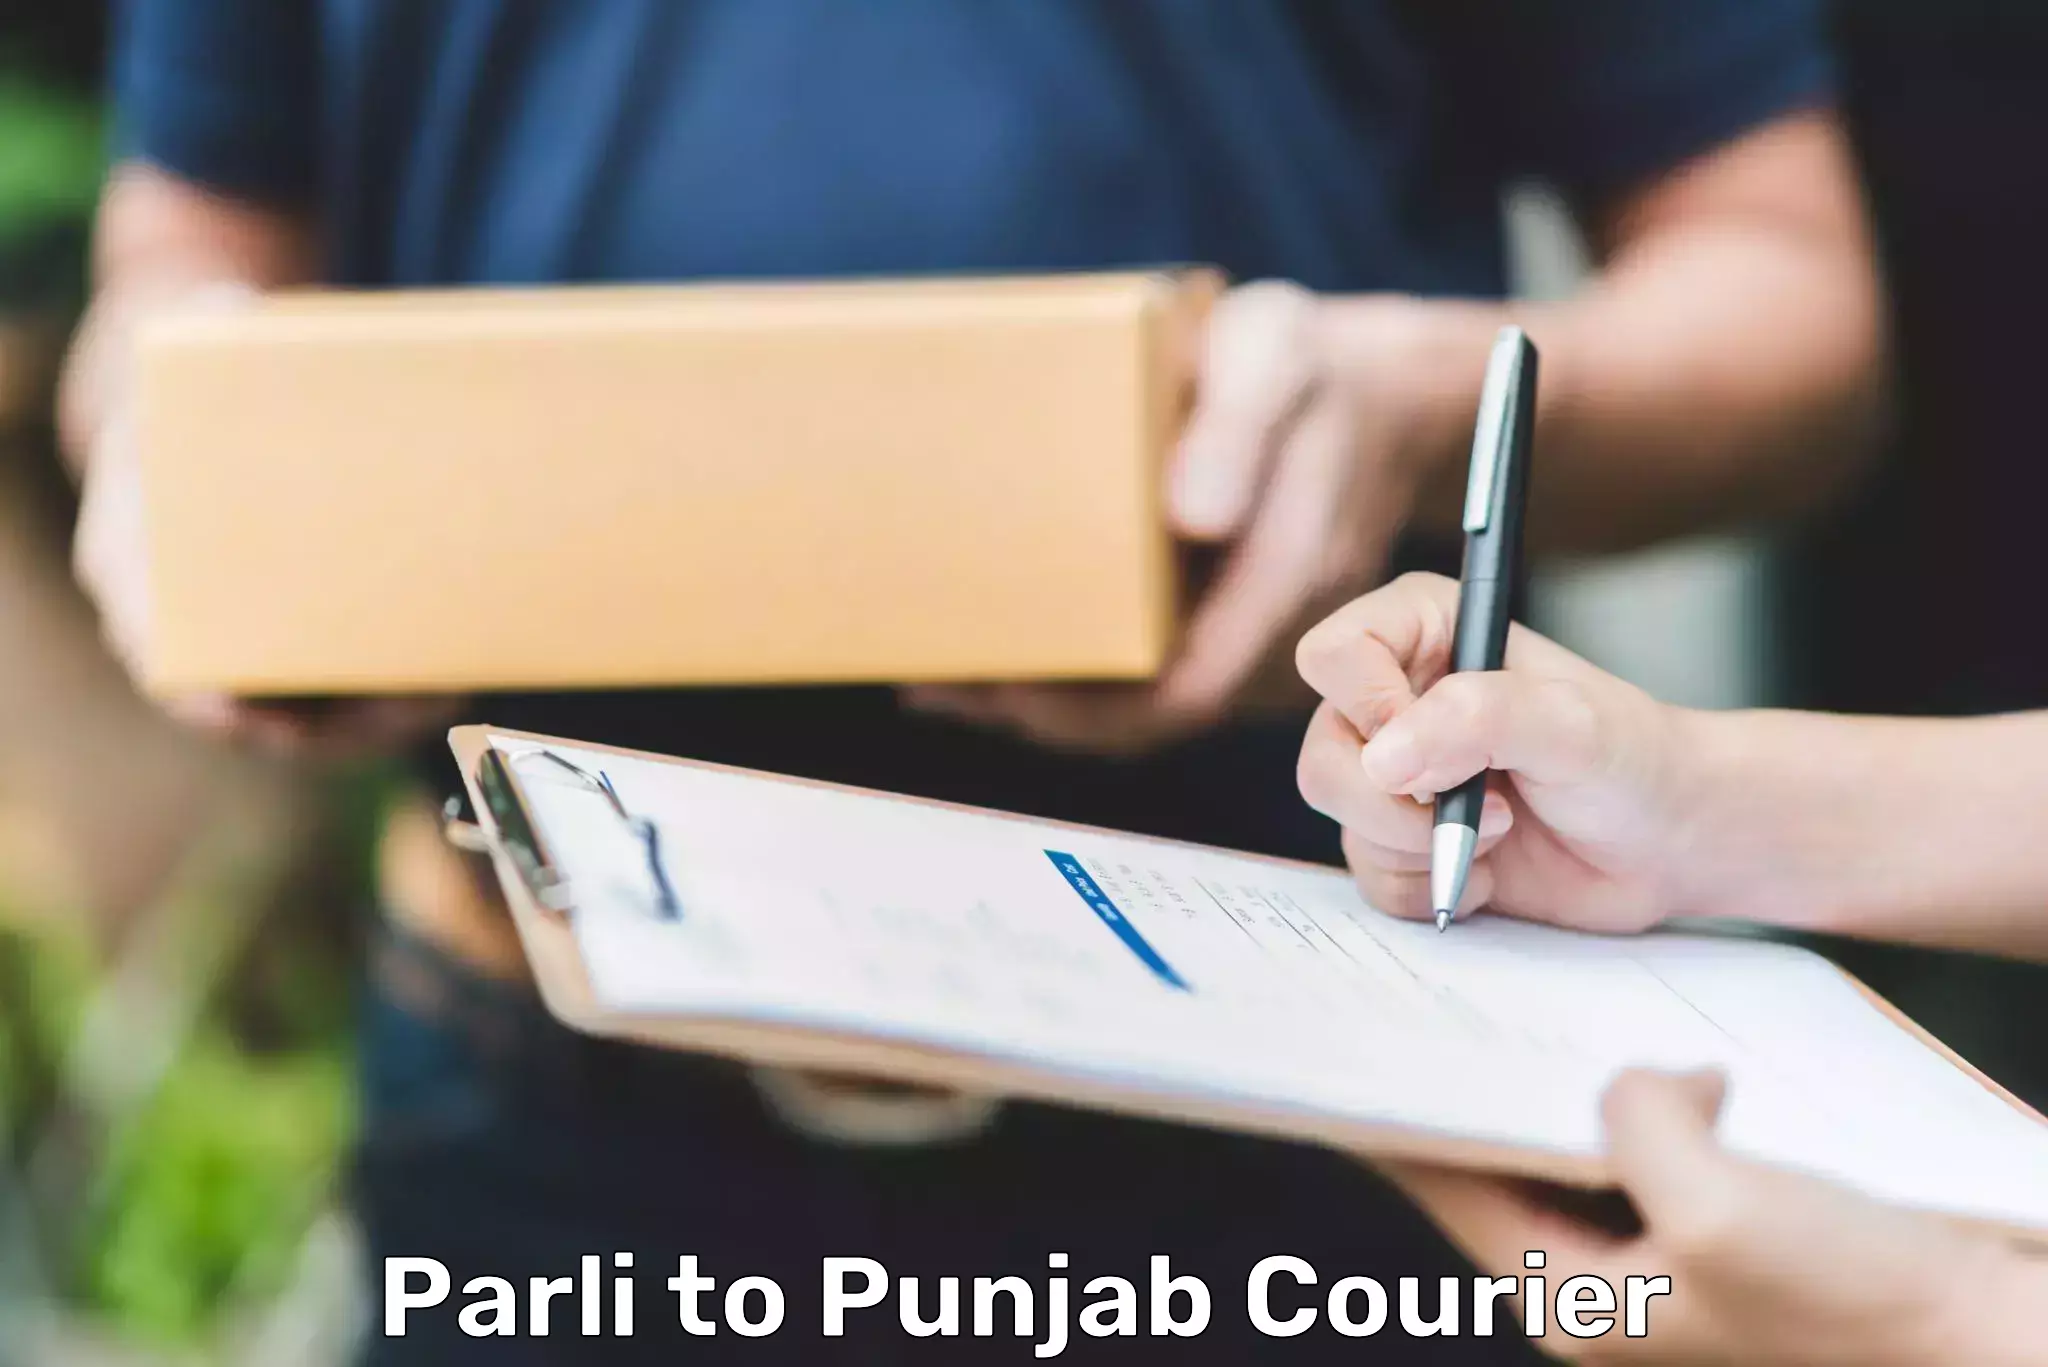 Package tracking Parli to Punjab